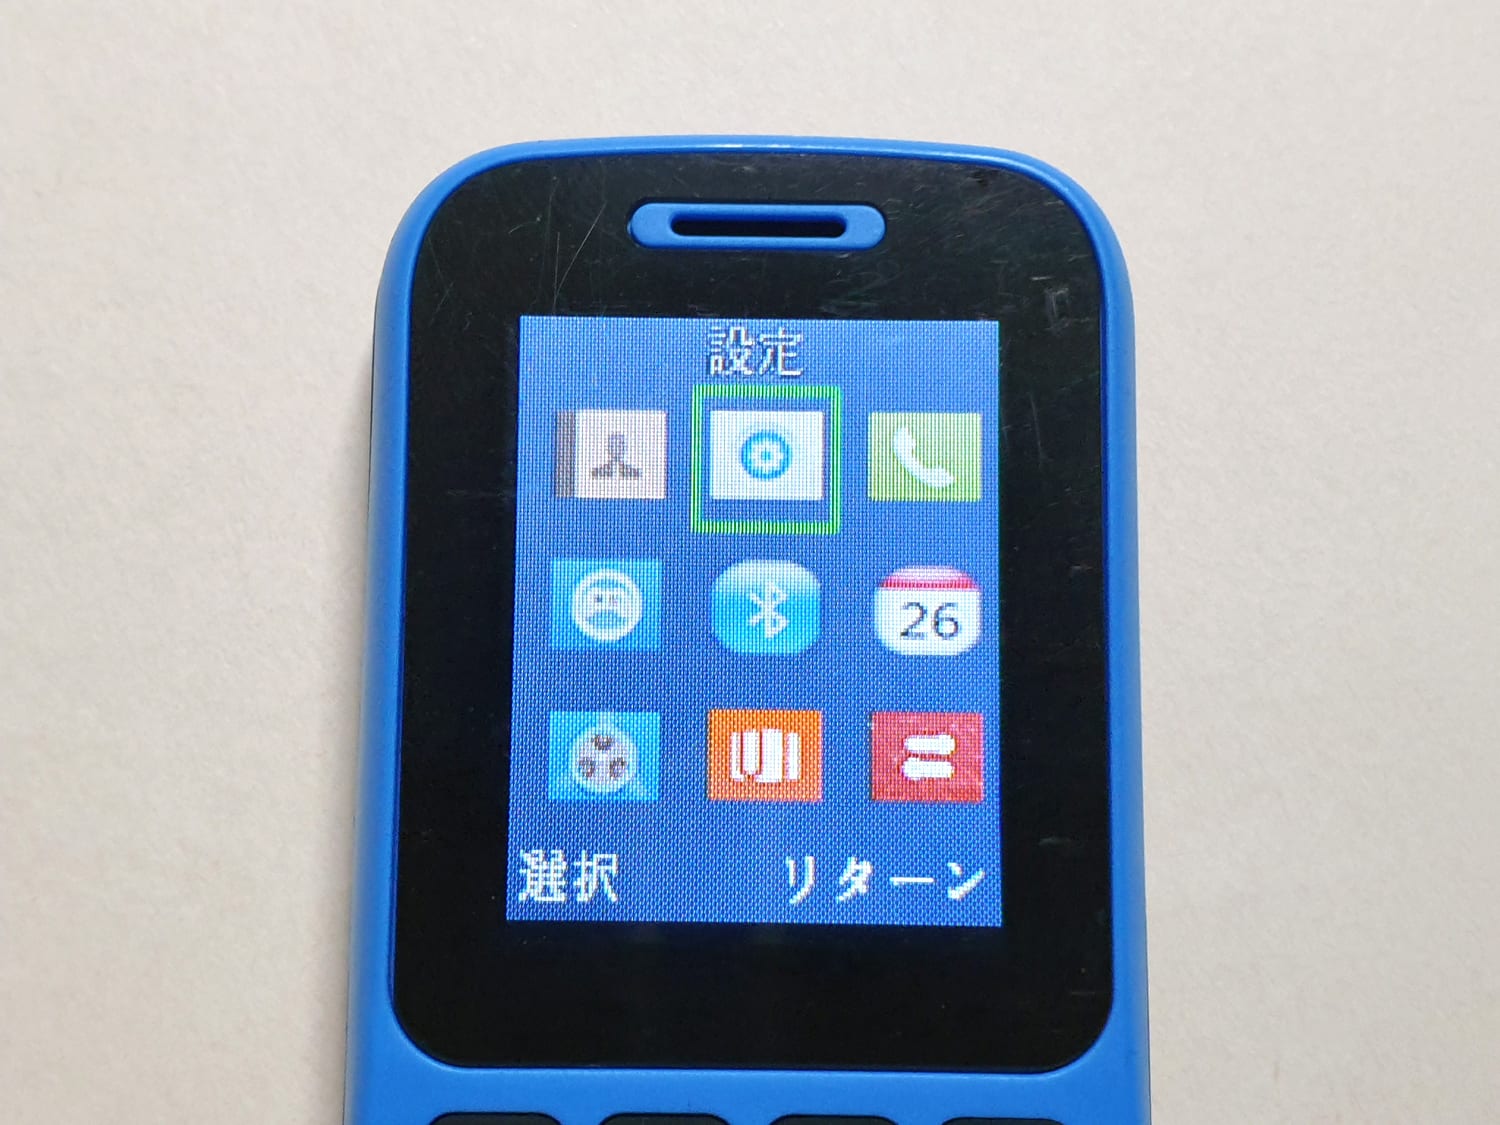 クレーンゲーム景品の Bluetooth子機 が実はケータイだった 香港でsimを入れて使ってみる Engadget 日本版